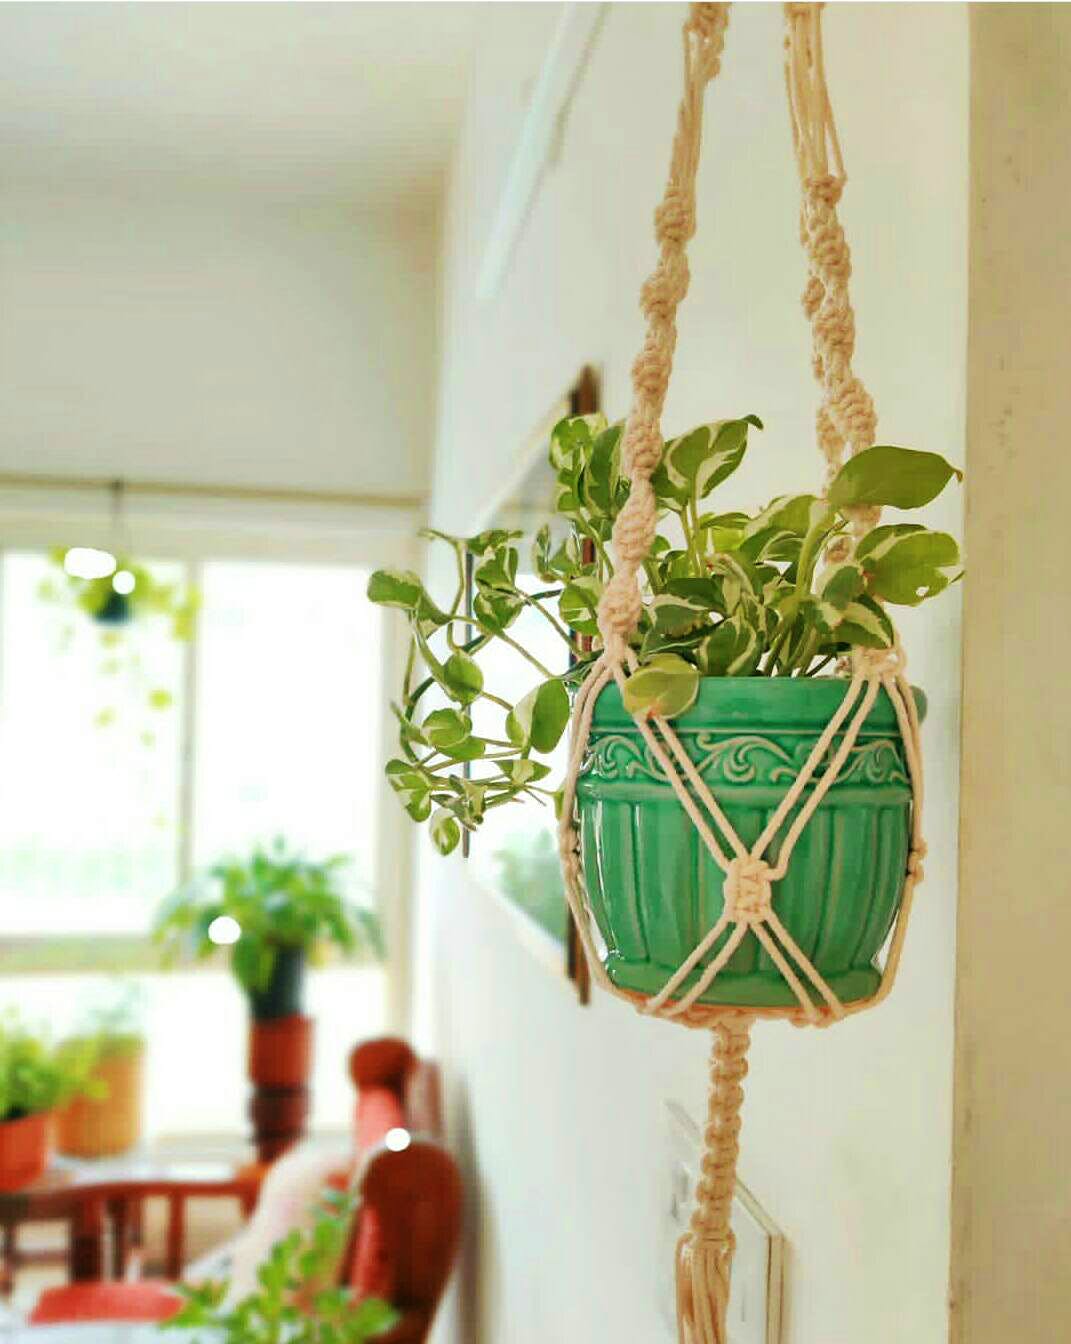 Flowerpot,Green,Houseplant,Plant,Flower,Room,Herb,Vascular plant,Interior design